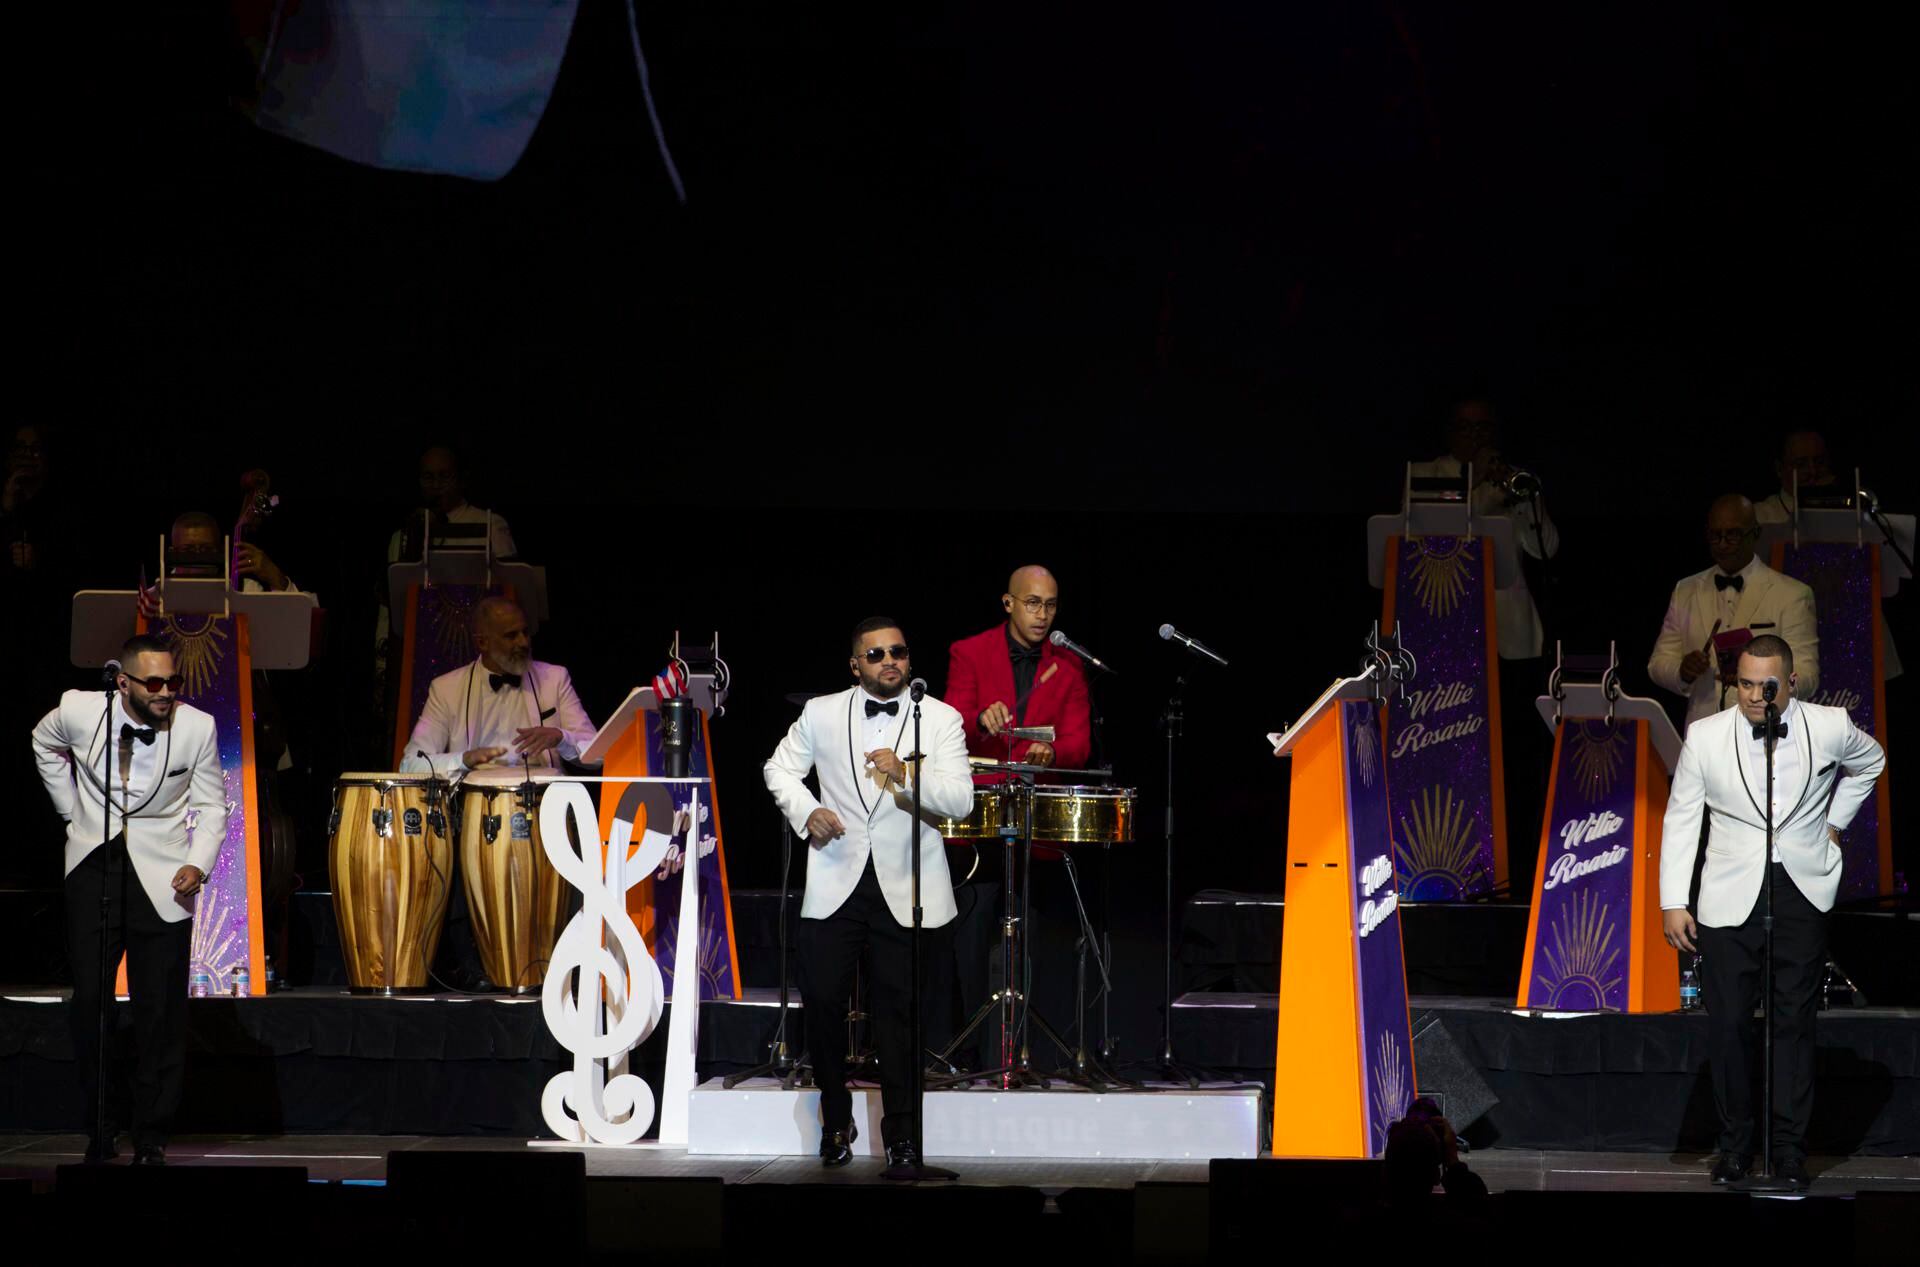 Artistas de la talla de Gilberto Santa Rosa y Tony Vega rindieron homenaje este sábado al cantante y compositor Willie Rosario en su centenario con el concierto ¡Los 100 años de Willie Rosario! en el Coliseo de Puerto Rico.